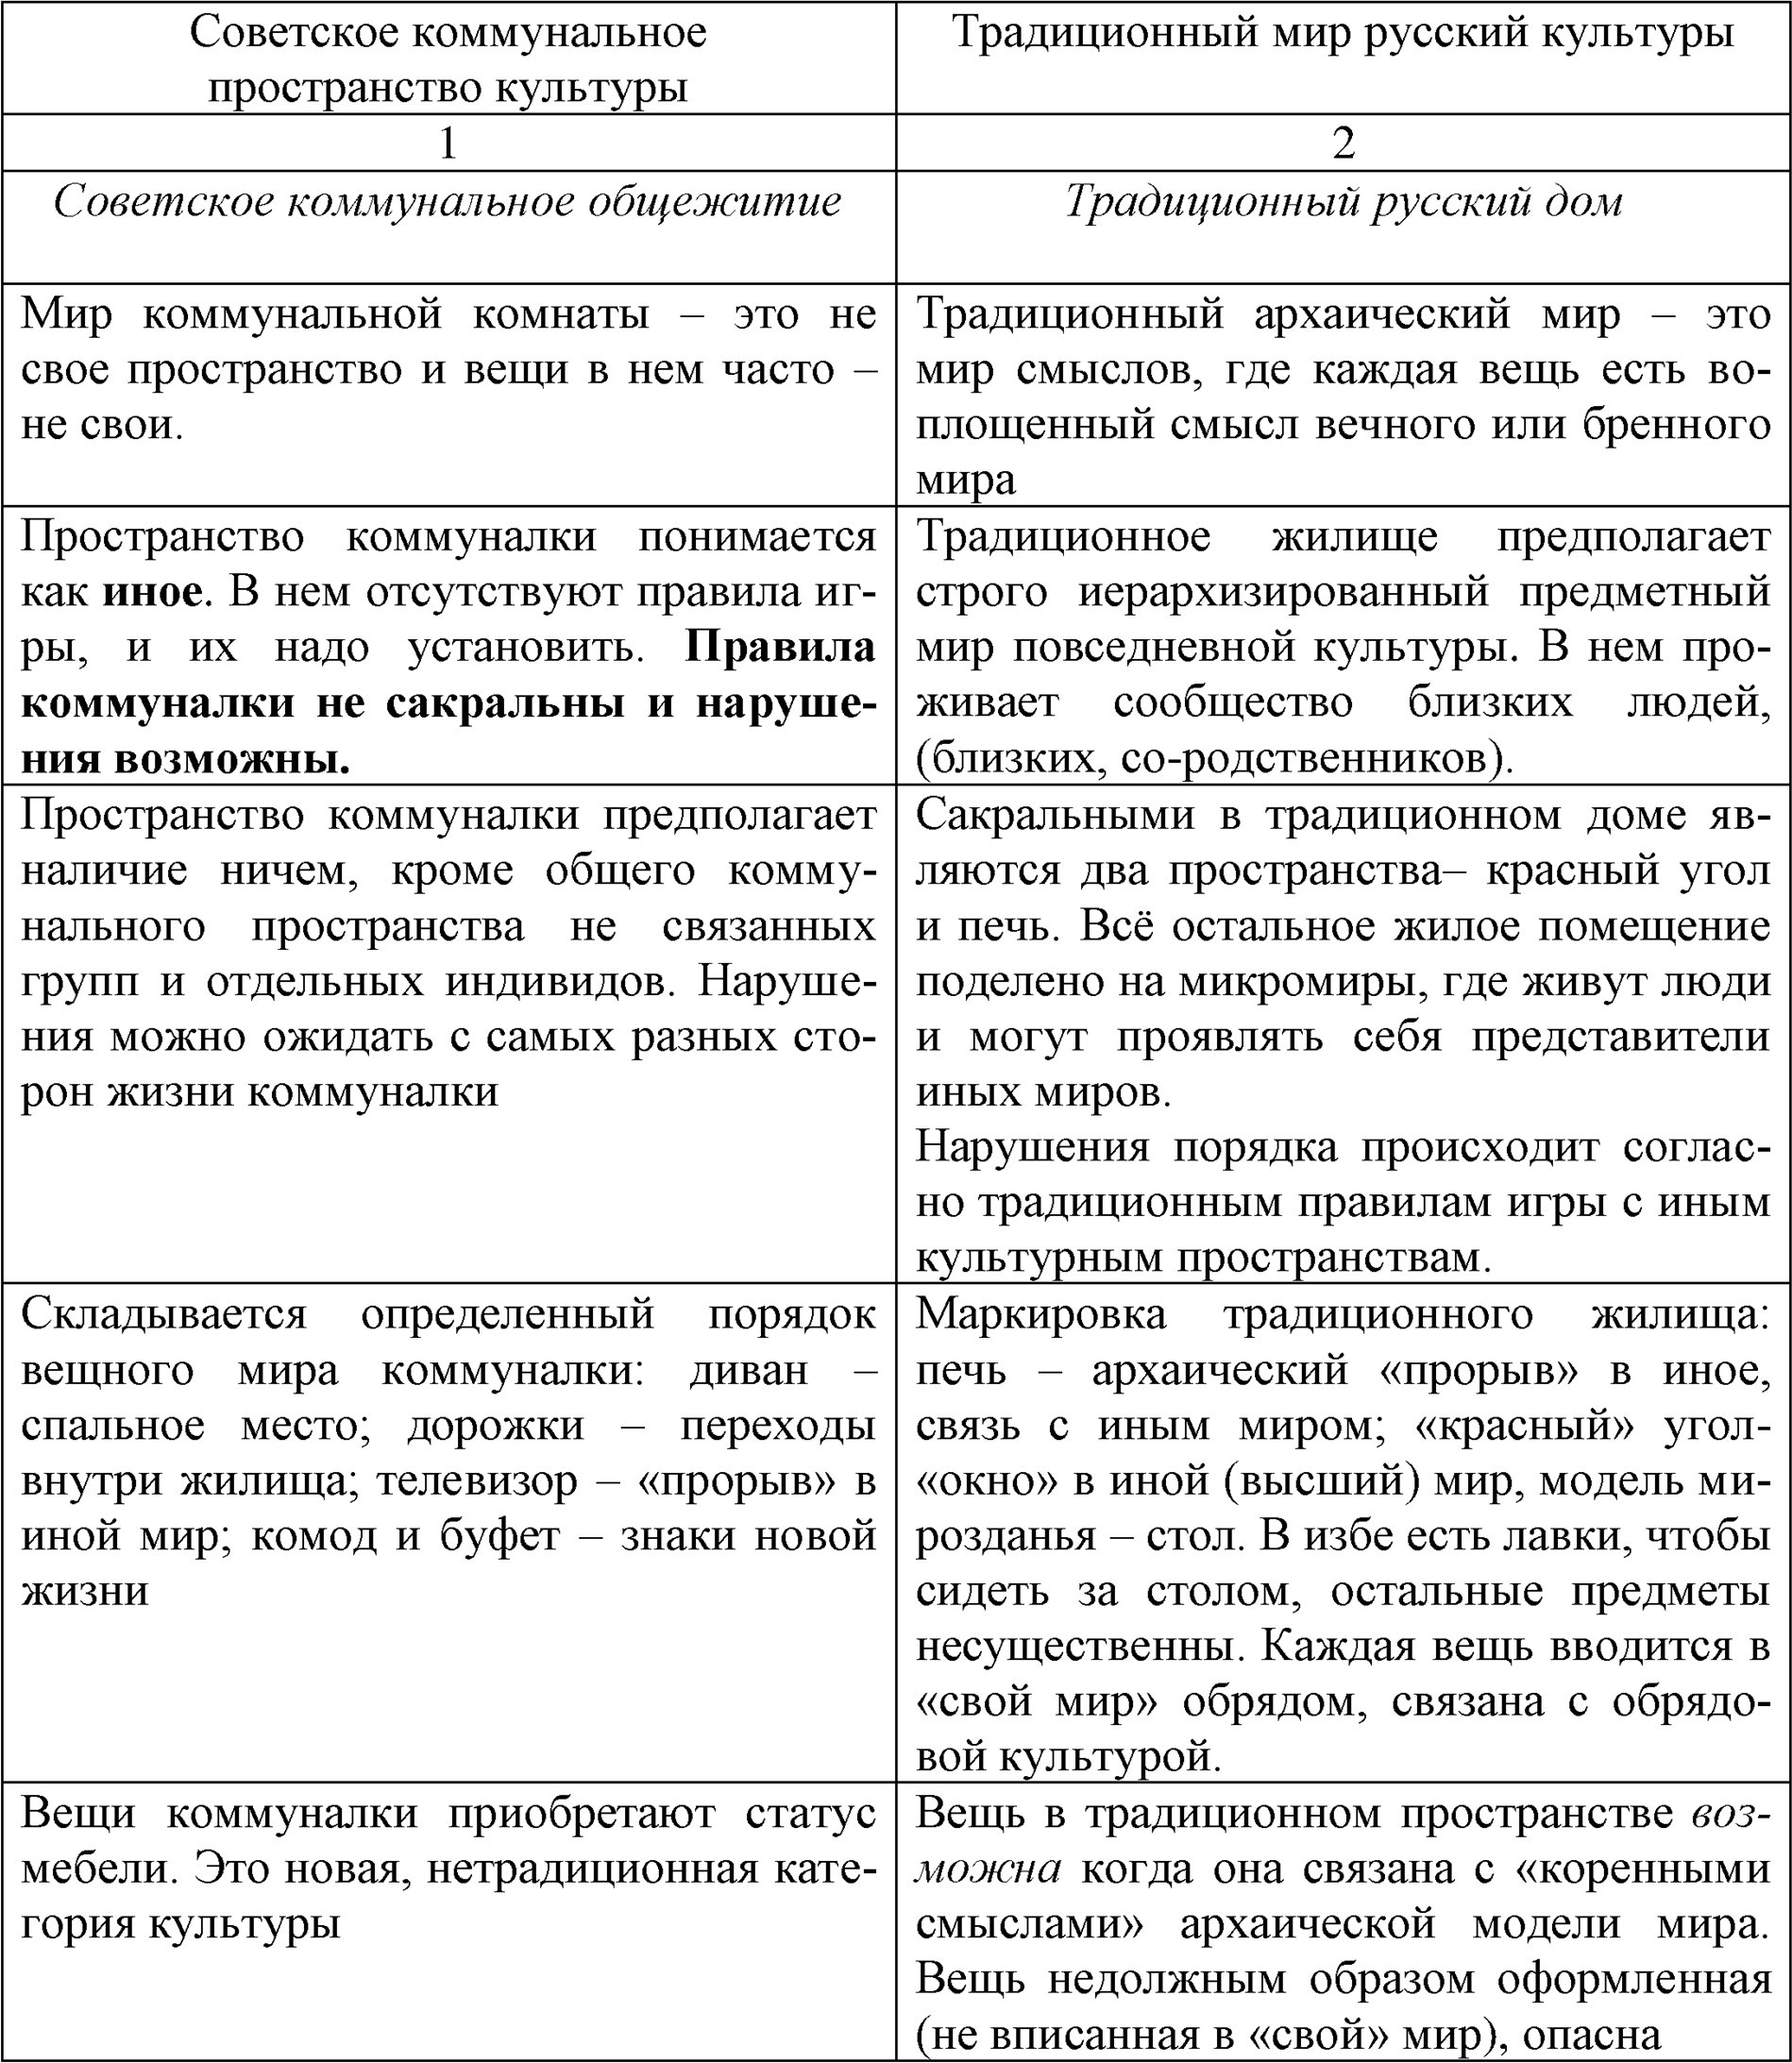 Различие традиционного русского и советского принципа социальной организации повседневности